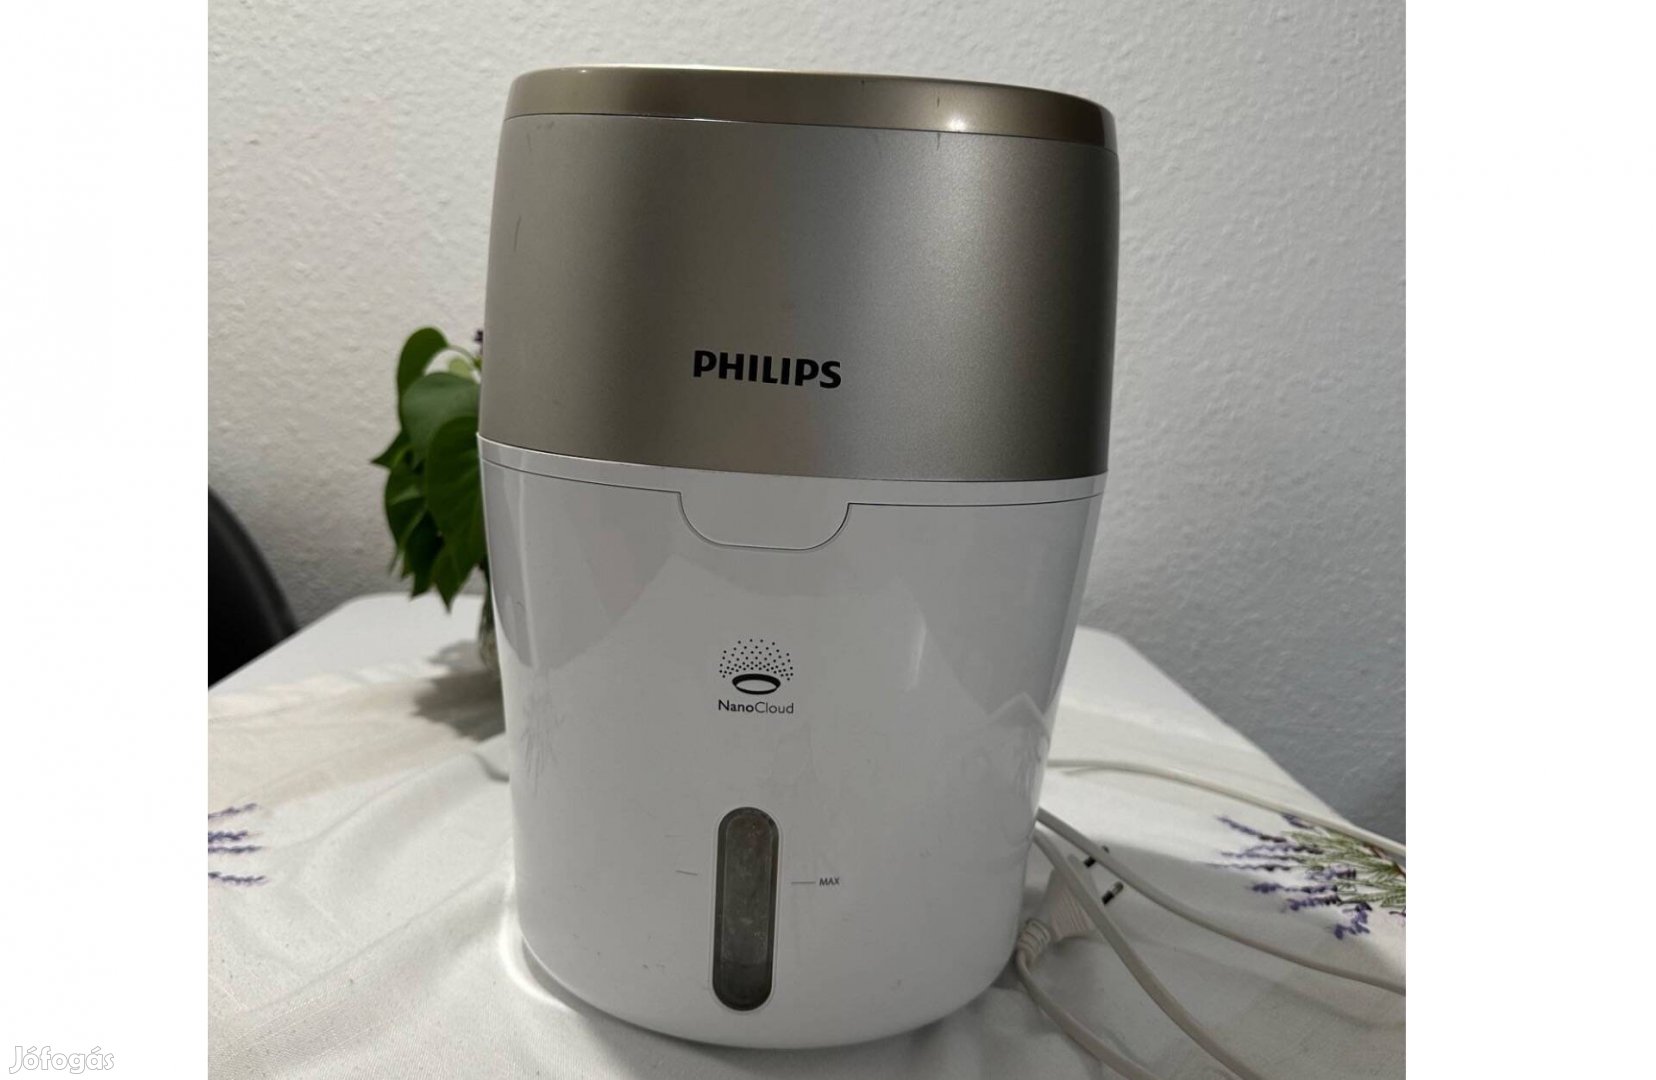 Philips Nanocloud légpárásító +3 szűrő ajándék